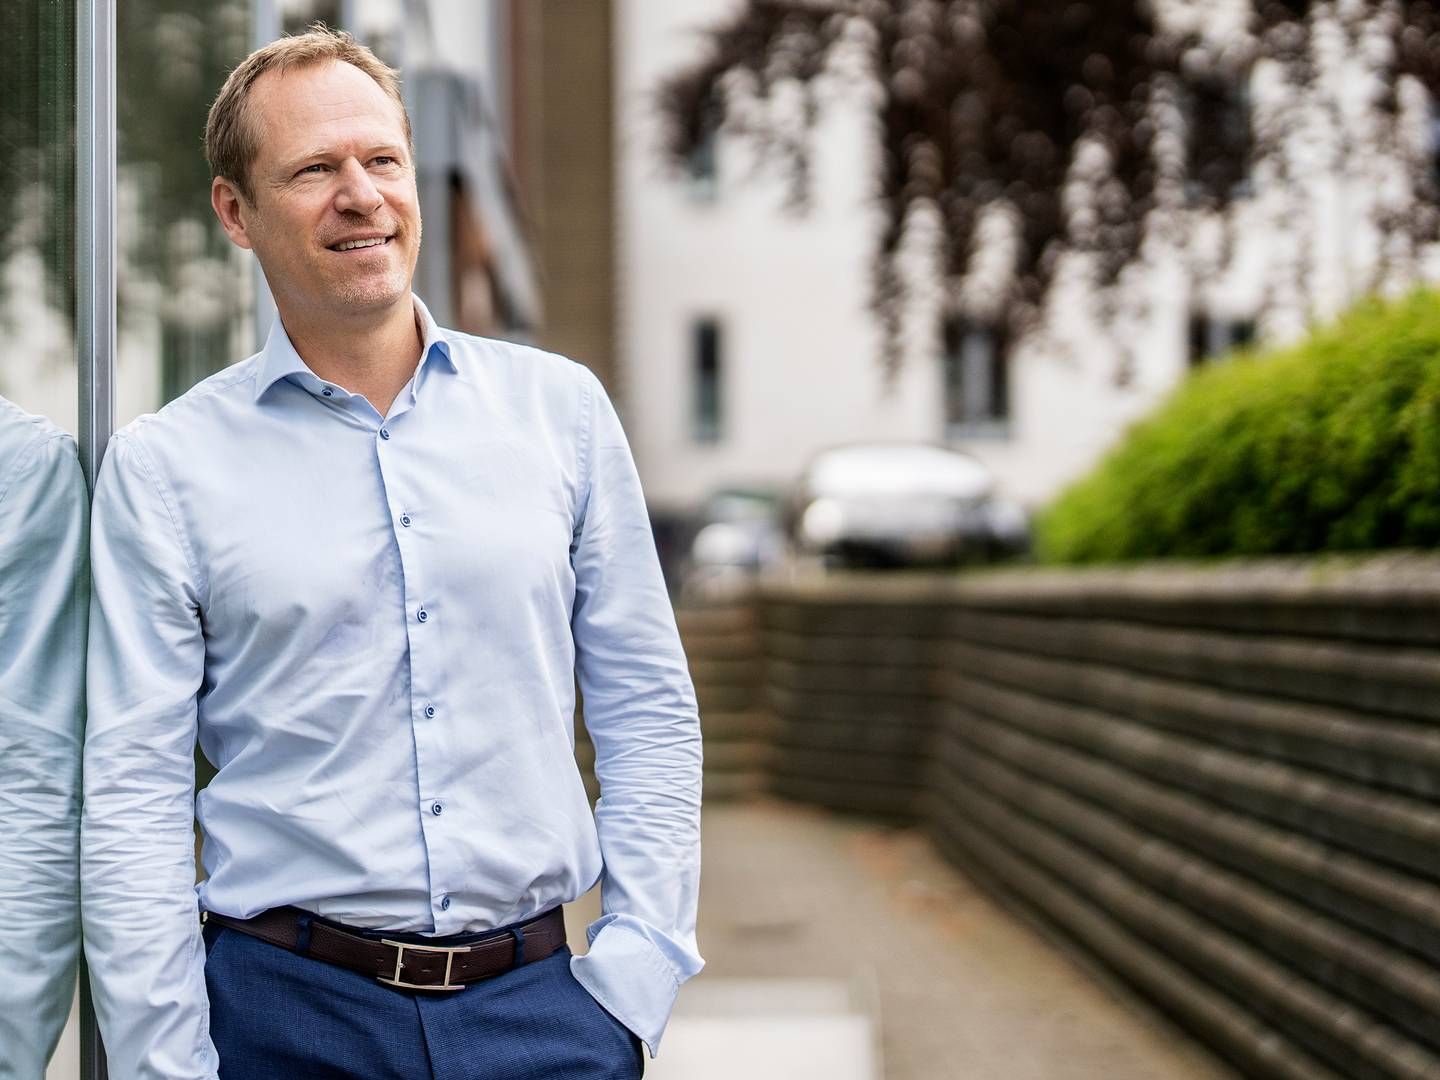 Søren Andersen er direktør i pensionsrådgivningsfirmaet Fpension, og han tror, at et topchefskifte i Pensiondanmark giver anledning til at finde en ny profil. | Foto: Stine Bidstrup/ERH